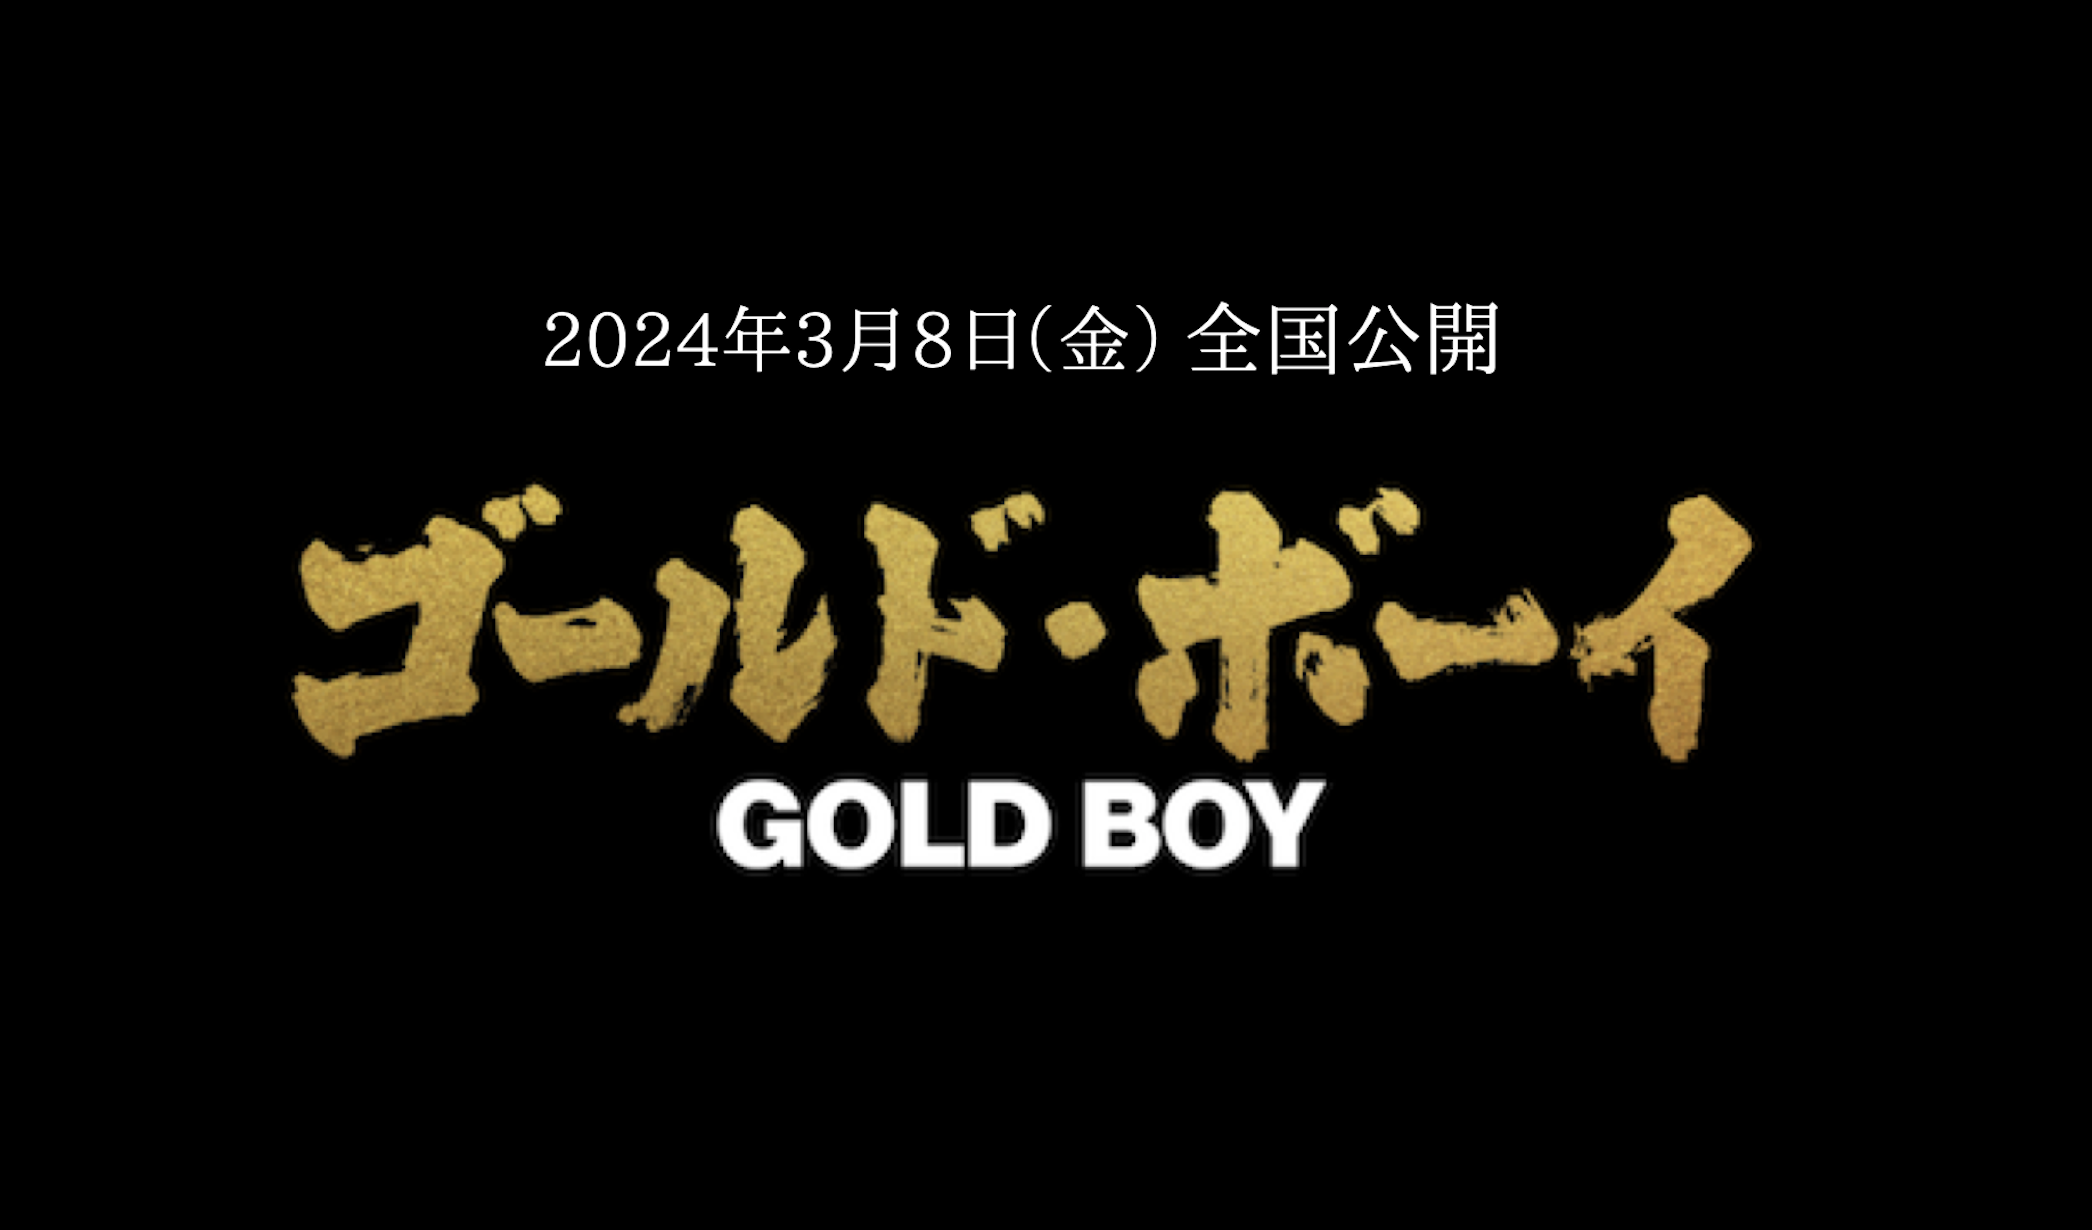 映画『ゴールド・ボーイ』公式サイト